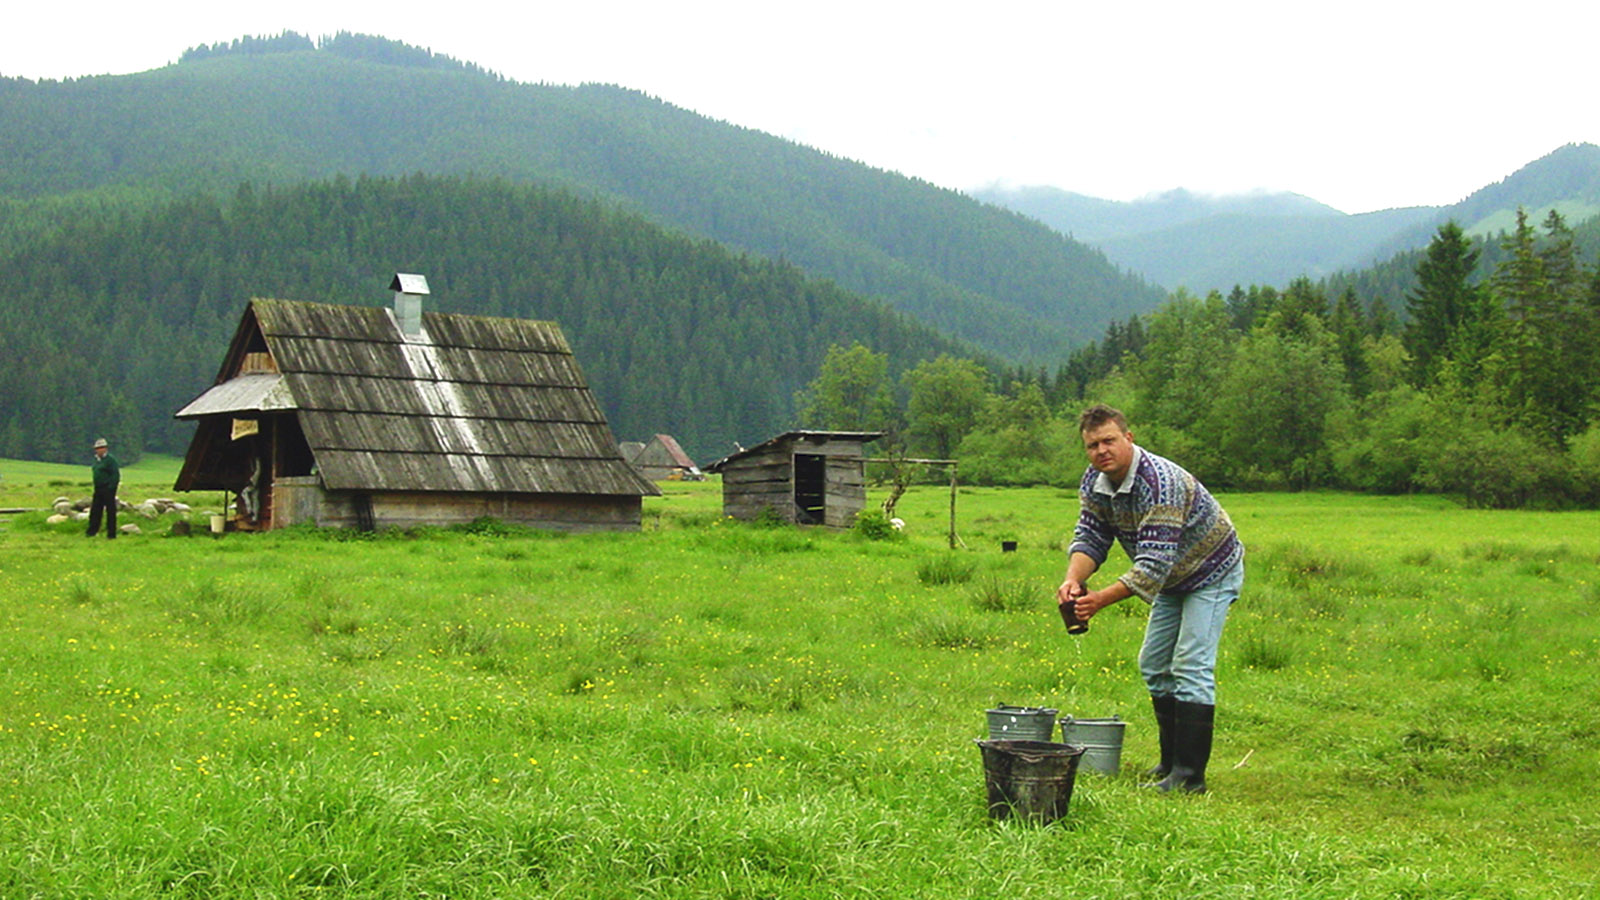 Hohe Tatra bei Witow: In den Hütten wird geräucherter Schafskäse hergestellt. Foto: Hilke Maunder